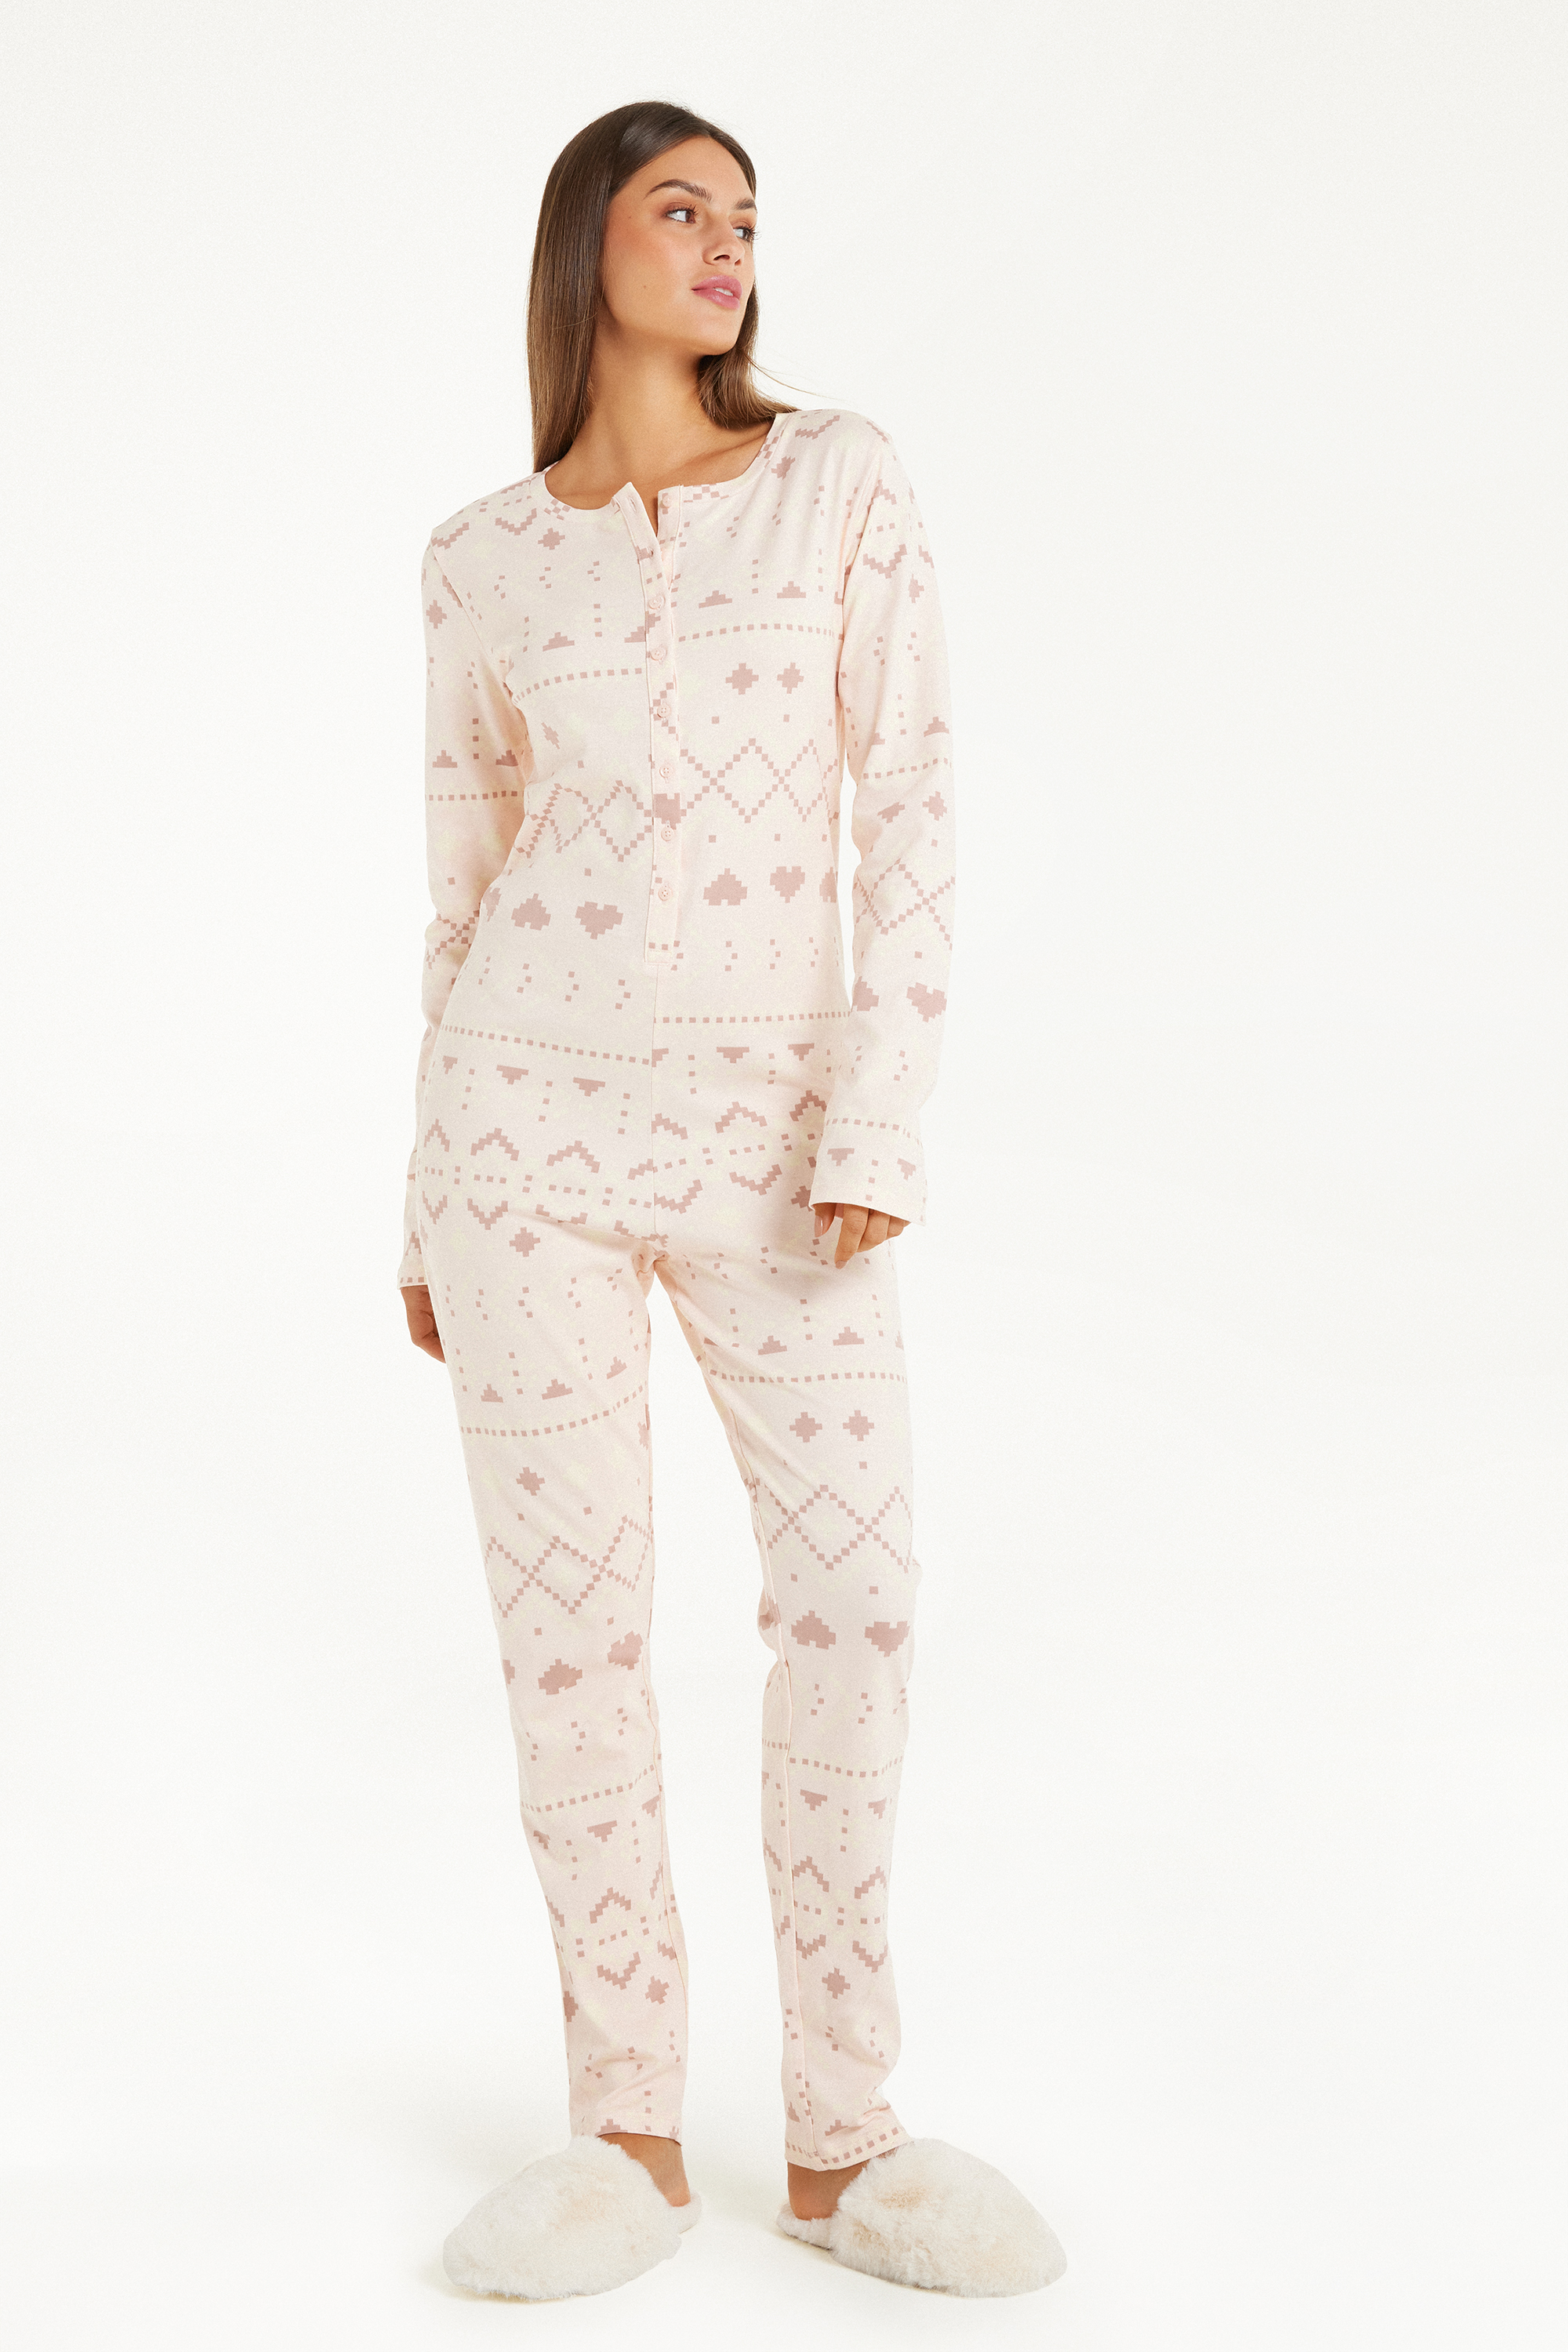 Pijama Salopetă din Bumbac Gros Imprimeu Nordic